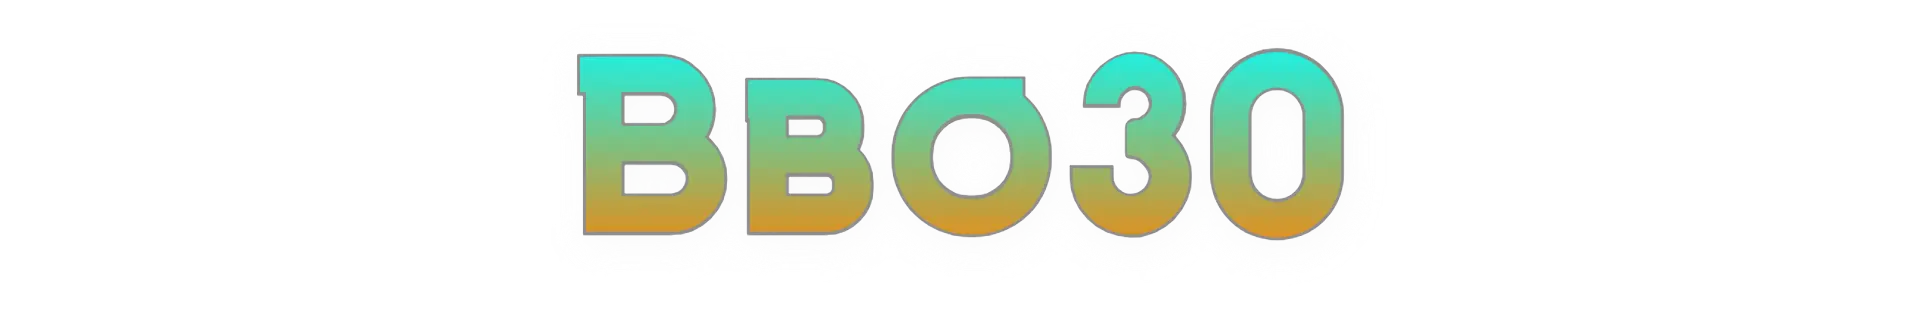 Bbo30